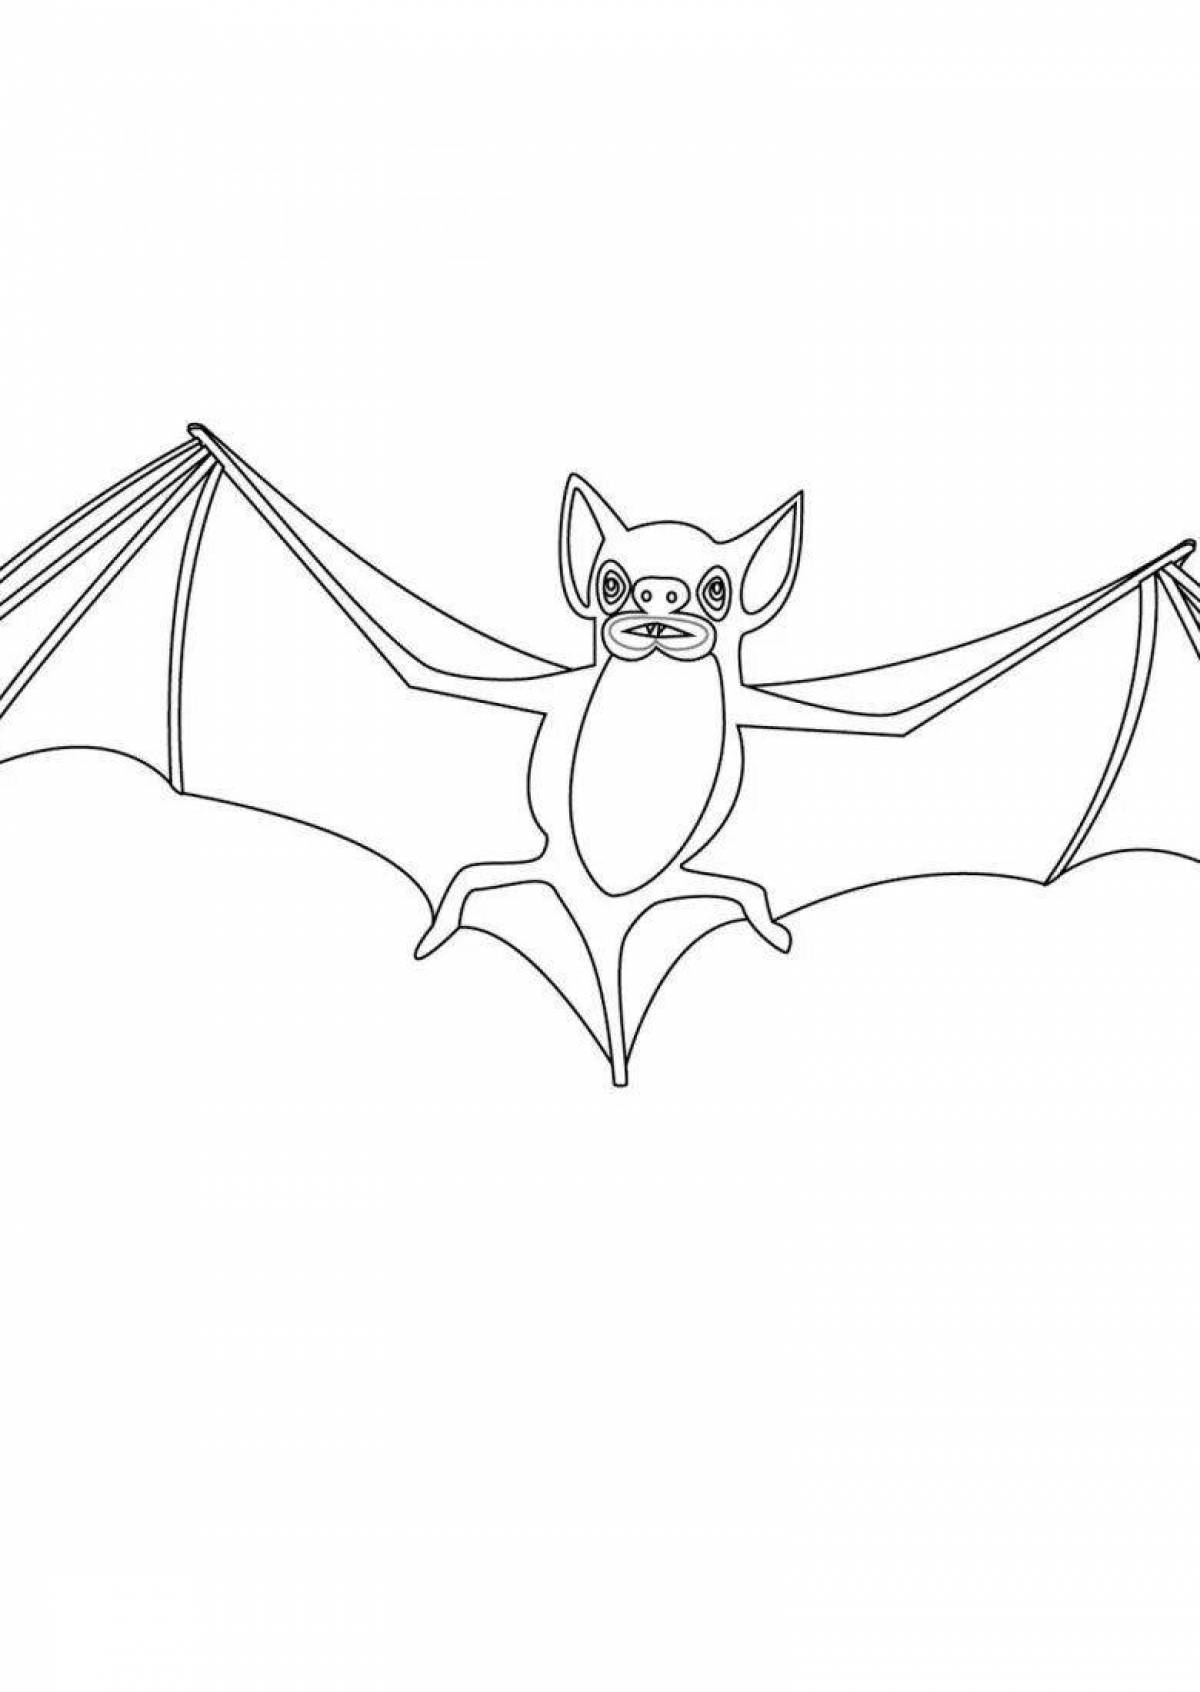 Glamorous bat coloring page